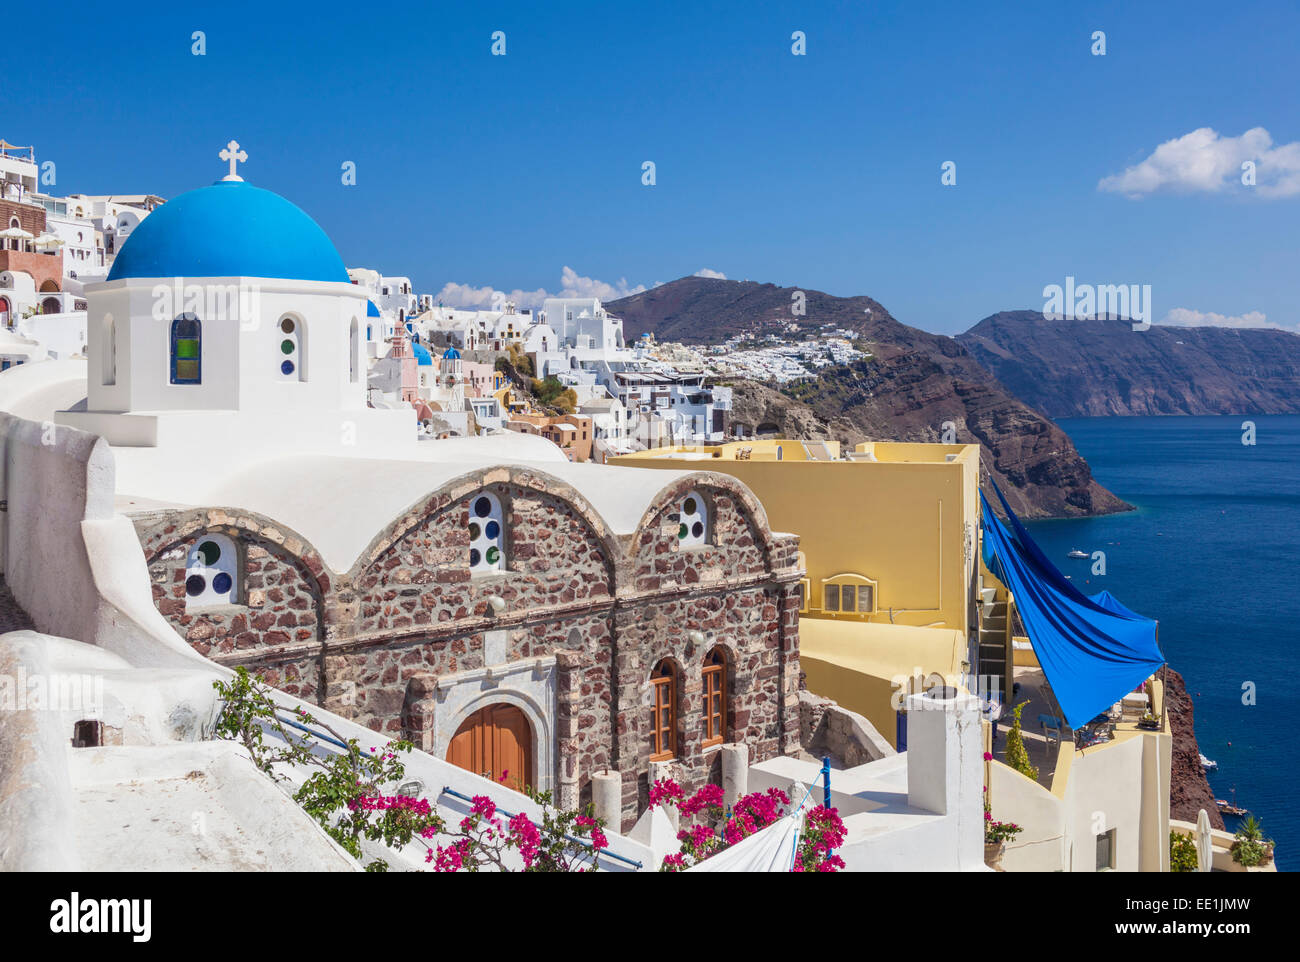 Chiesa Greca di San Nicola con cupola blu, Oia - Santorini (Thira), Isole Cicladi, isole greche, Grecia, Europa Foto Stock